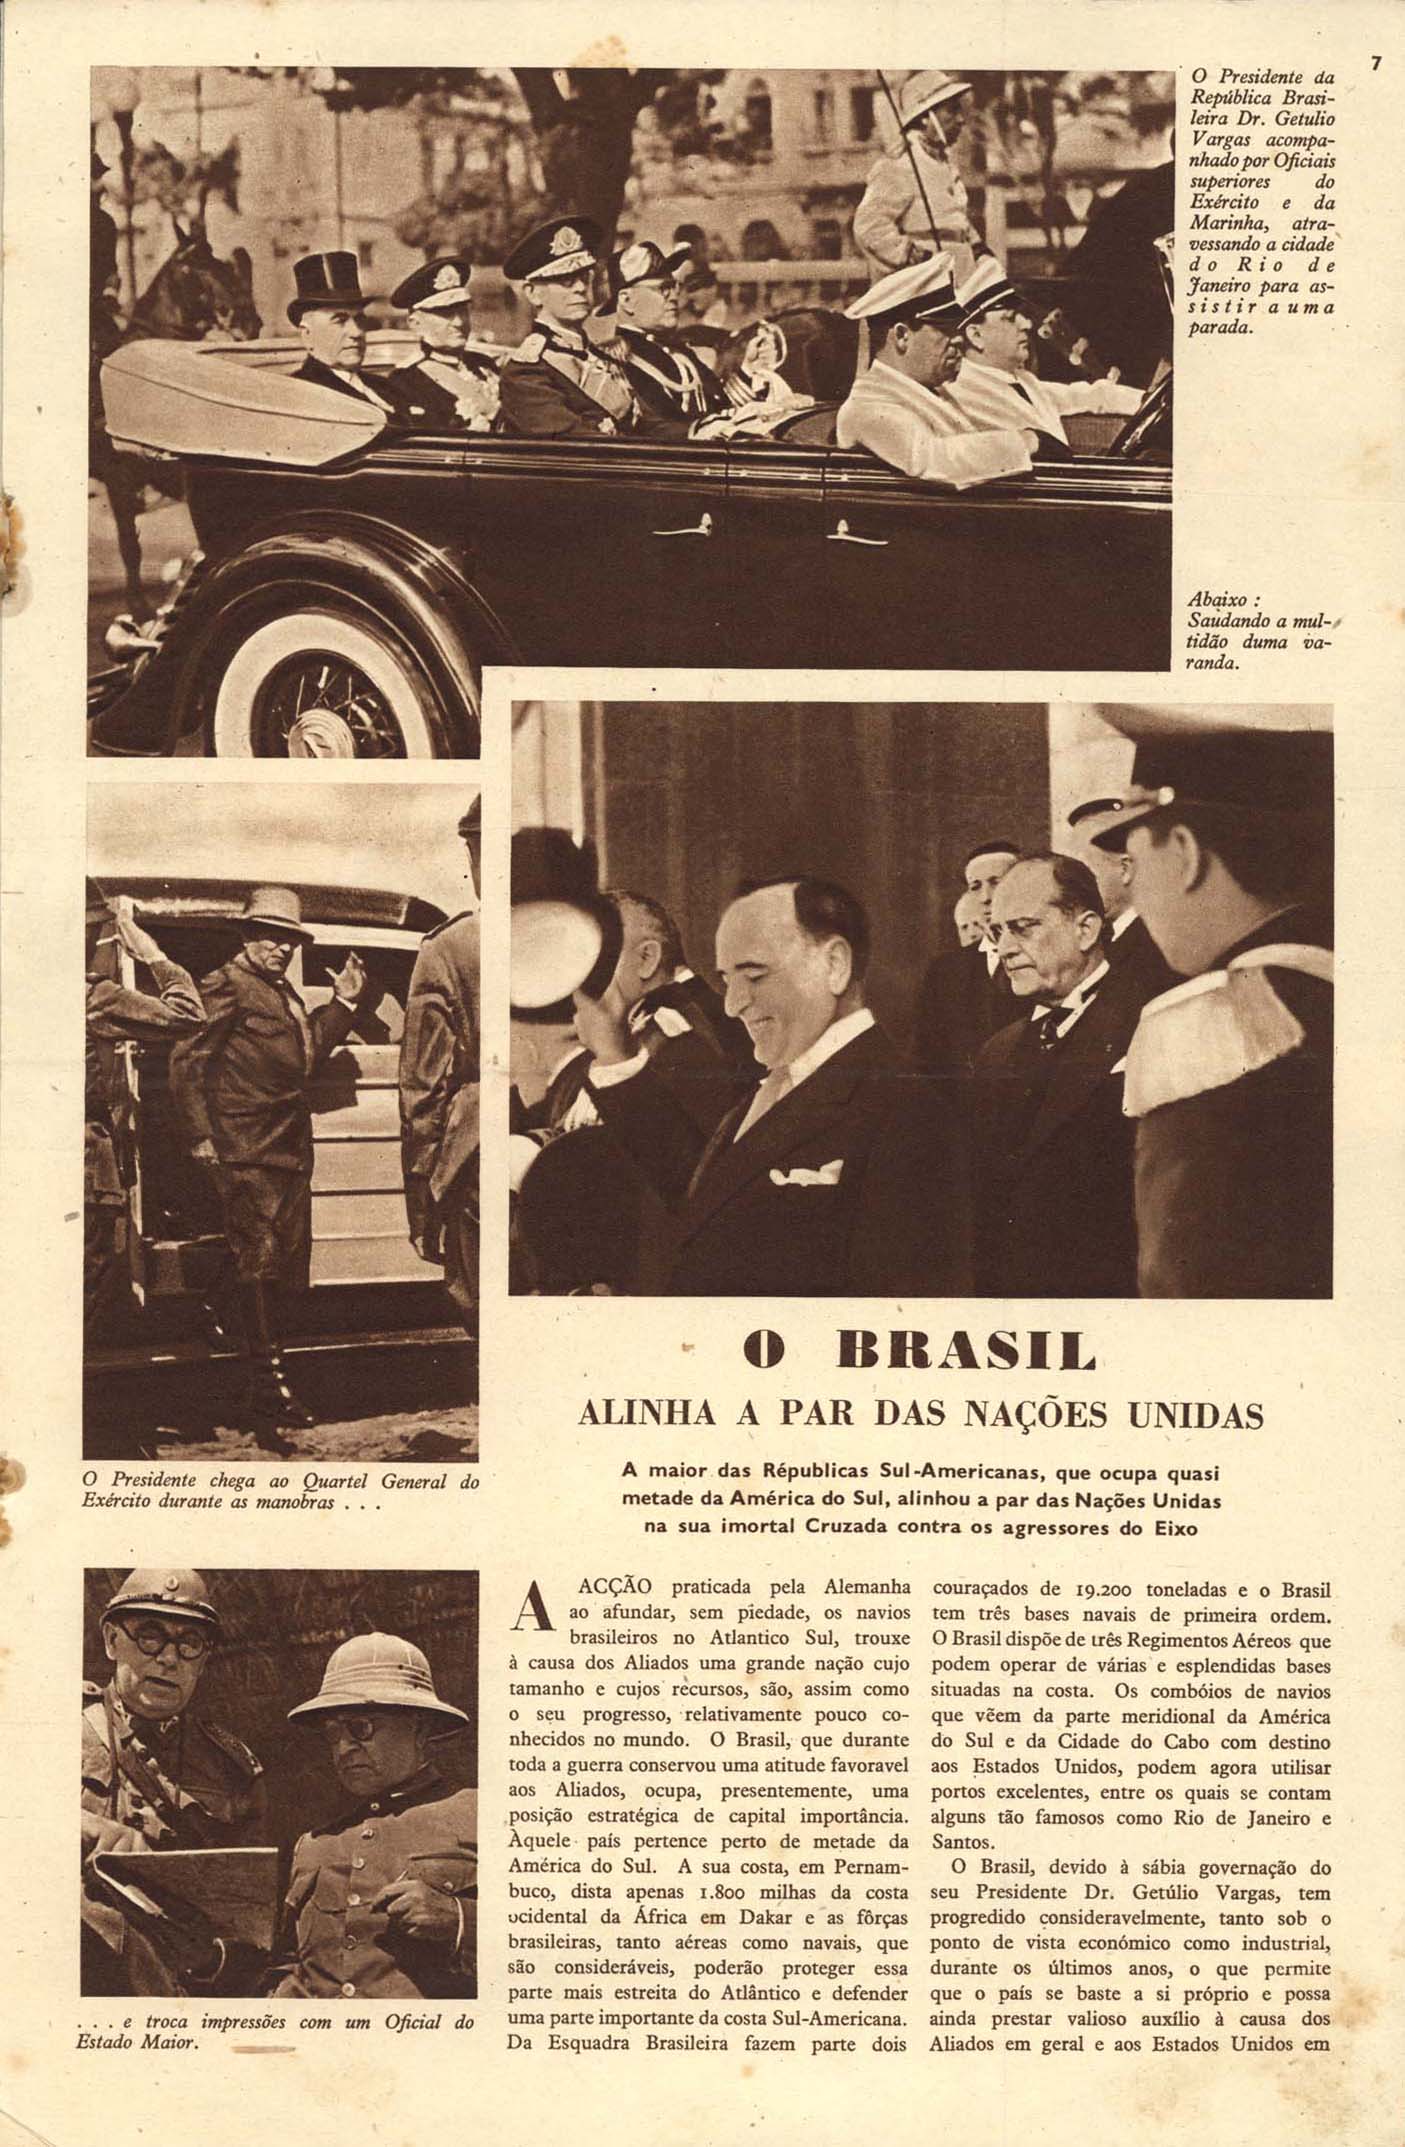 O BRASIL alinha a par das Nações Unidas. A Guerra Ilustrada, [ S.l.], n. 2, p. 7-9, [1941-1942].